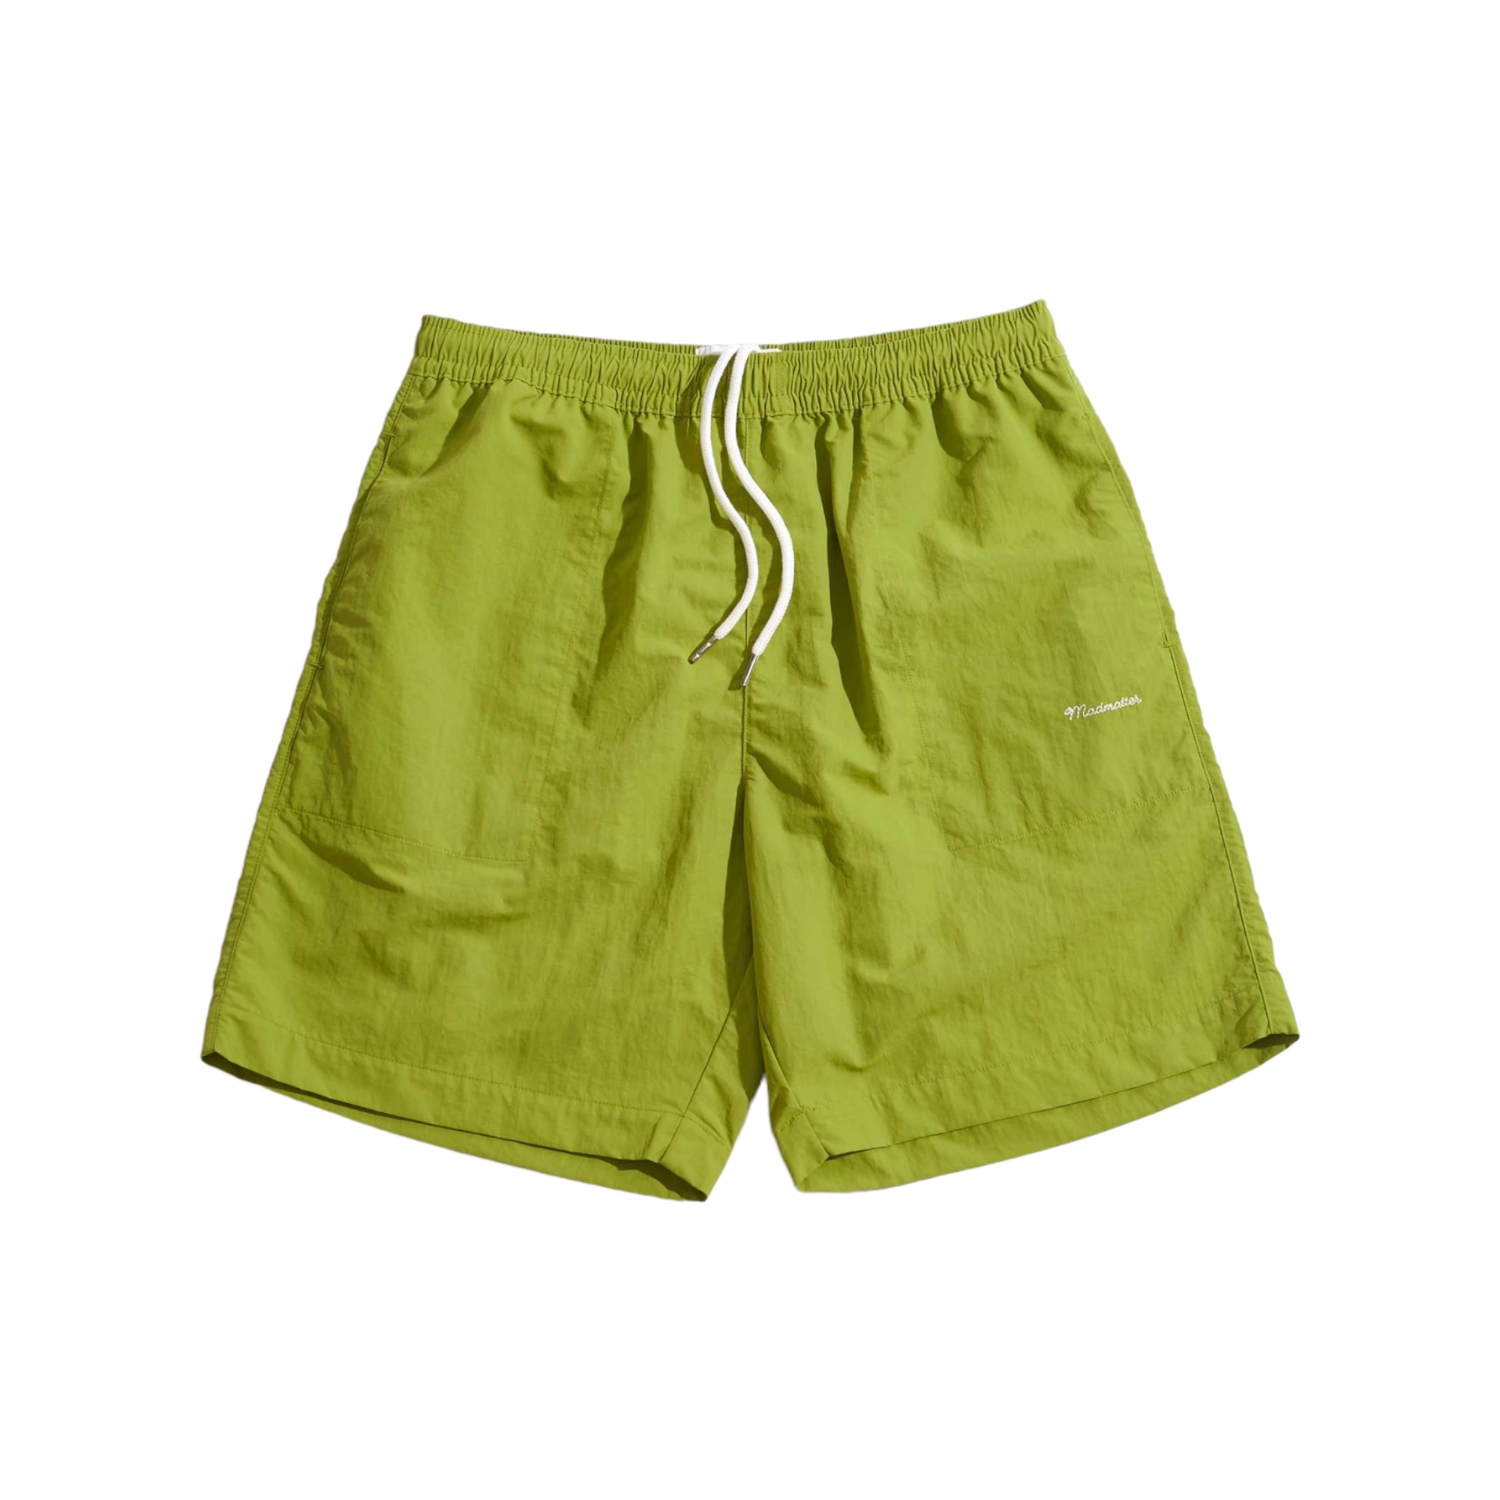 Cursive Logo Nylon Shorts (Lime Green)